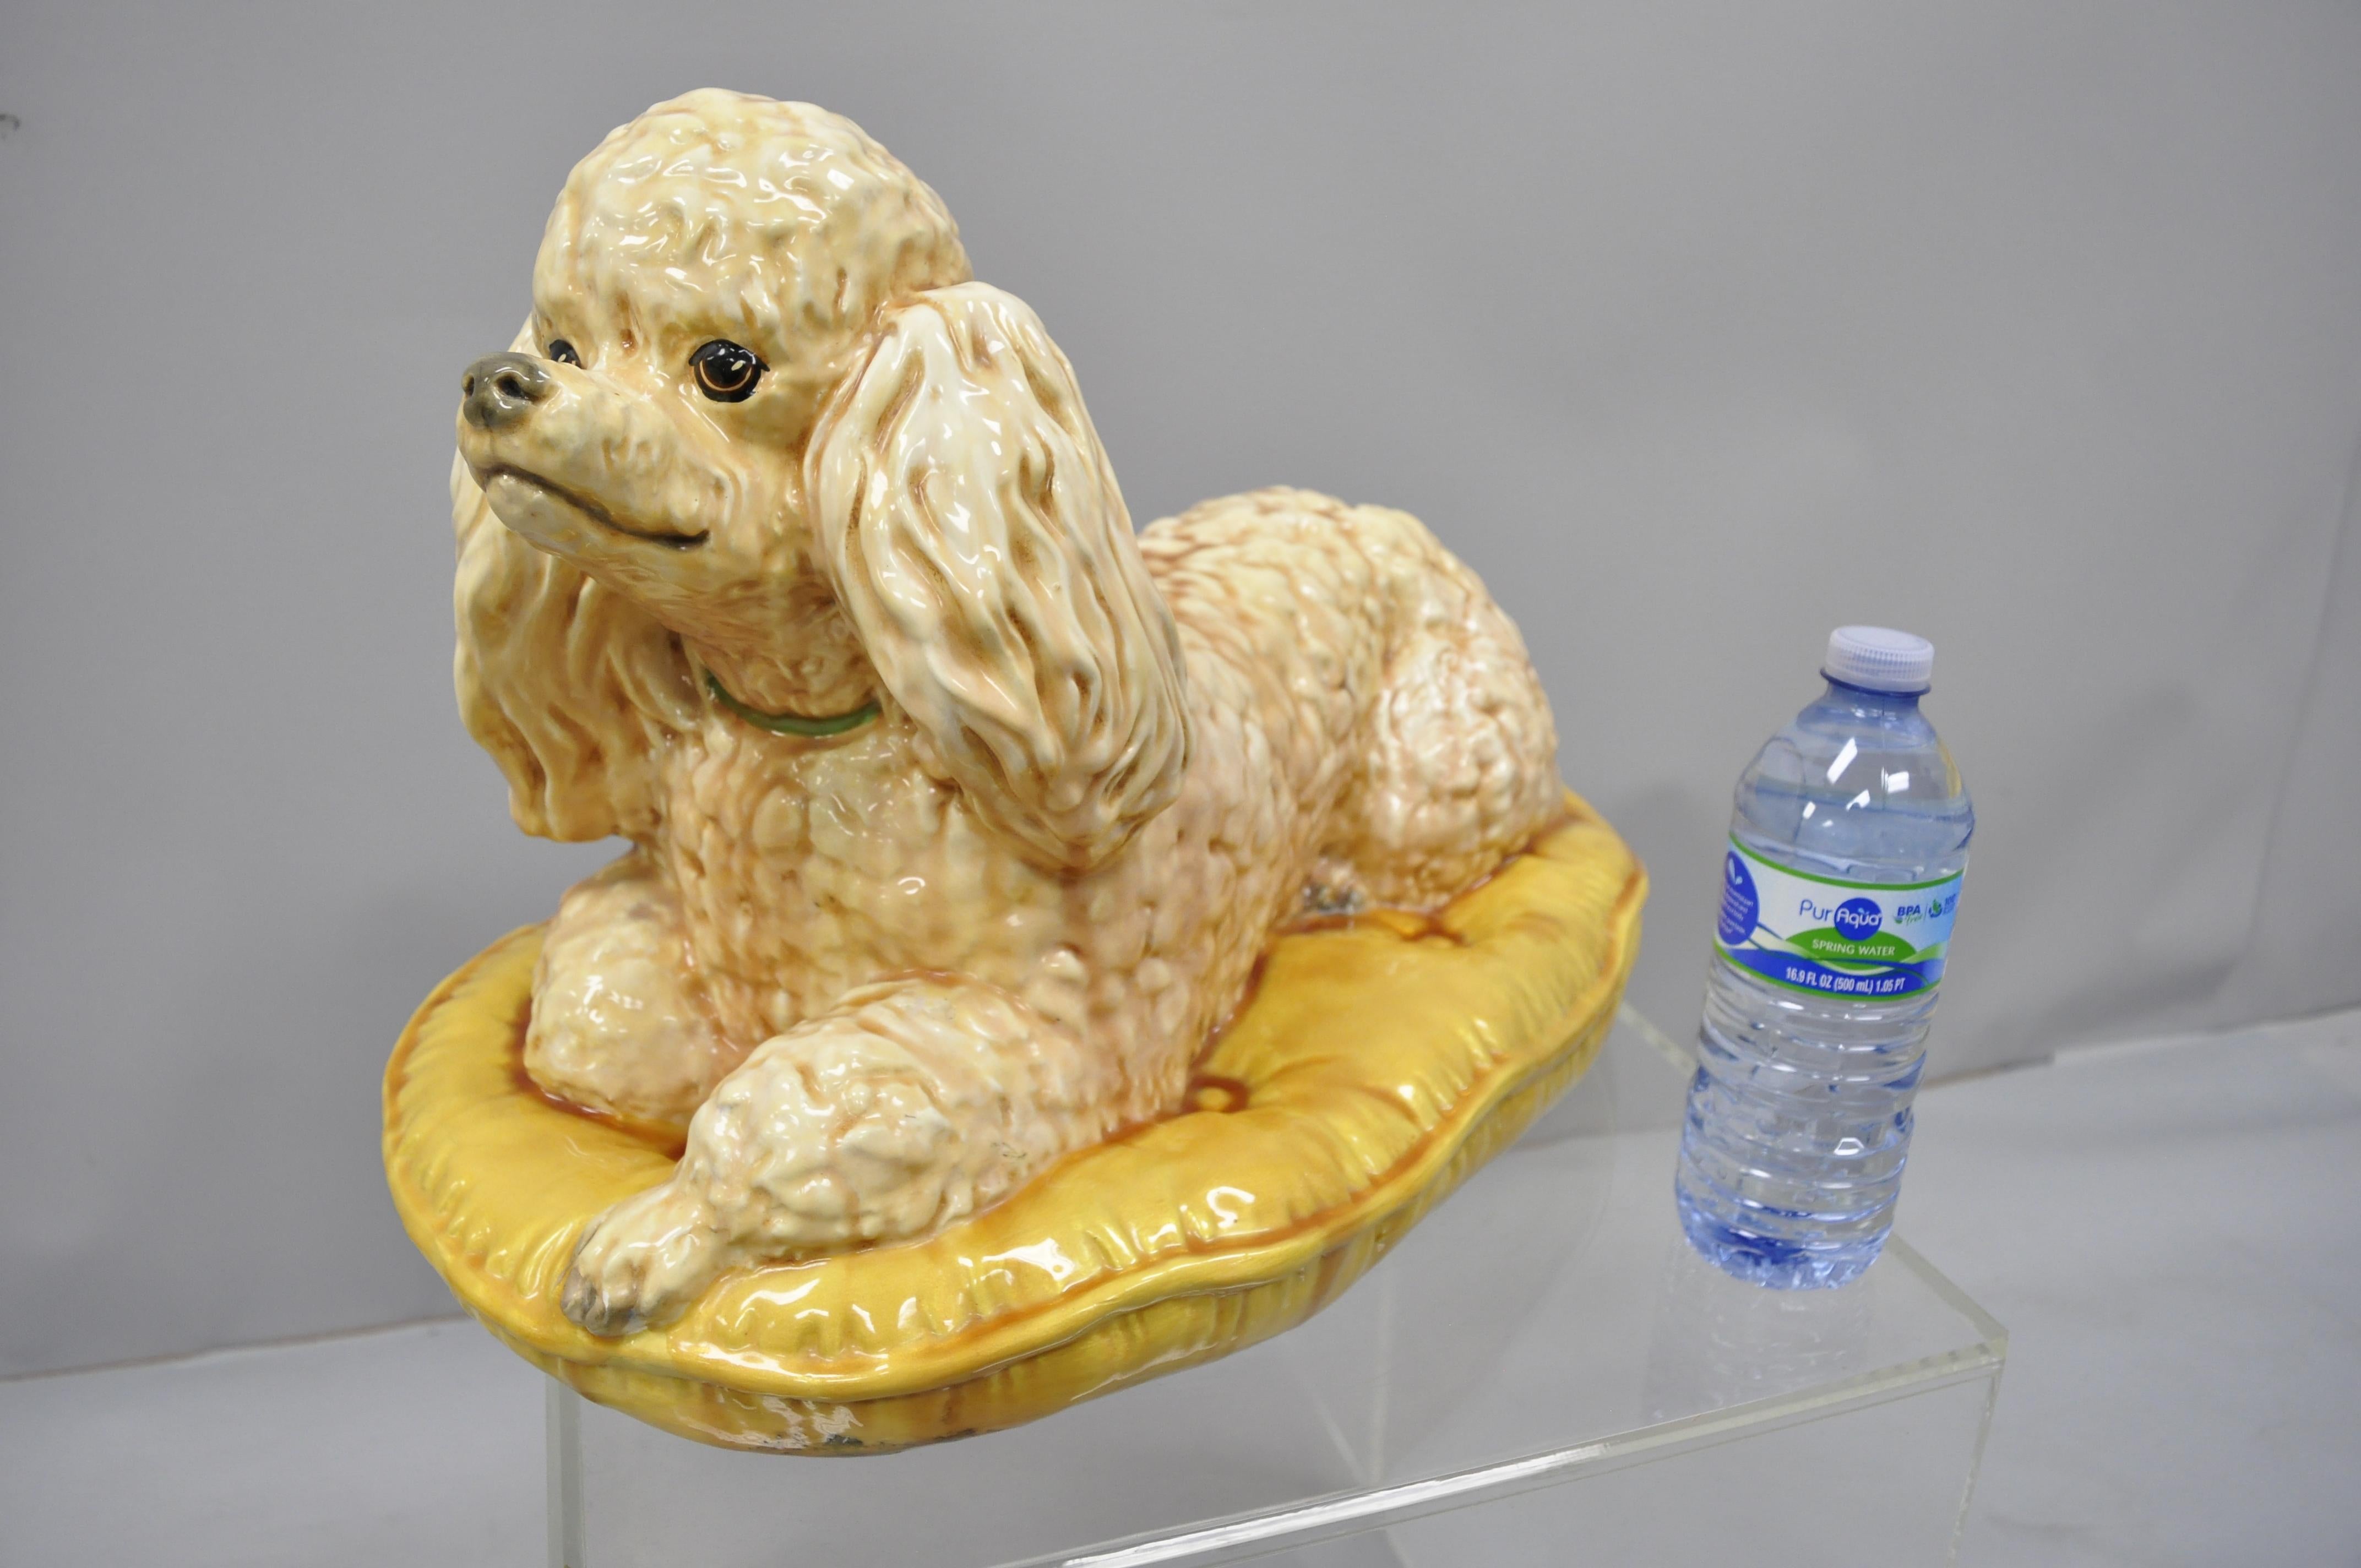 Vintage glasierte Keramik Pudel Hund auf Gold tufted Kissen Figur. Der Artikel zeigt einen großen, lebensechten Pudel, der auf einem Kissen mit goldenen Knöpfen ruht. Die Aufschrift scheint 